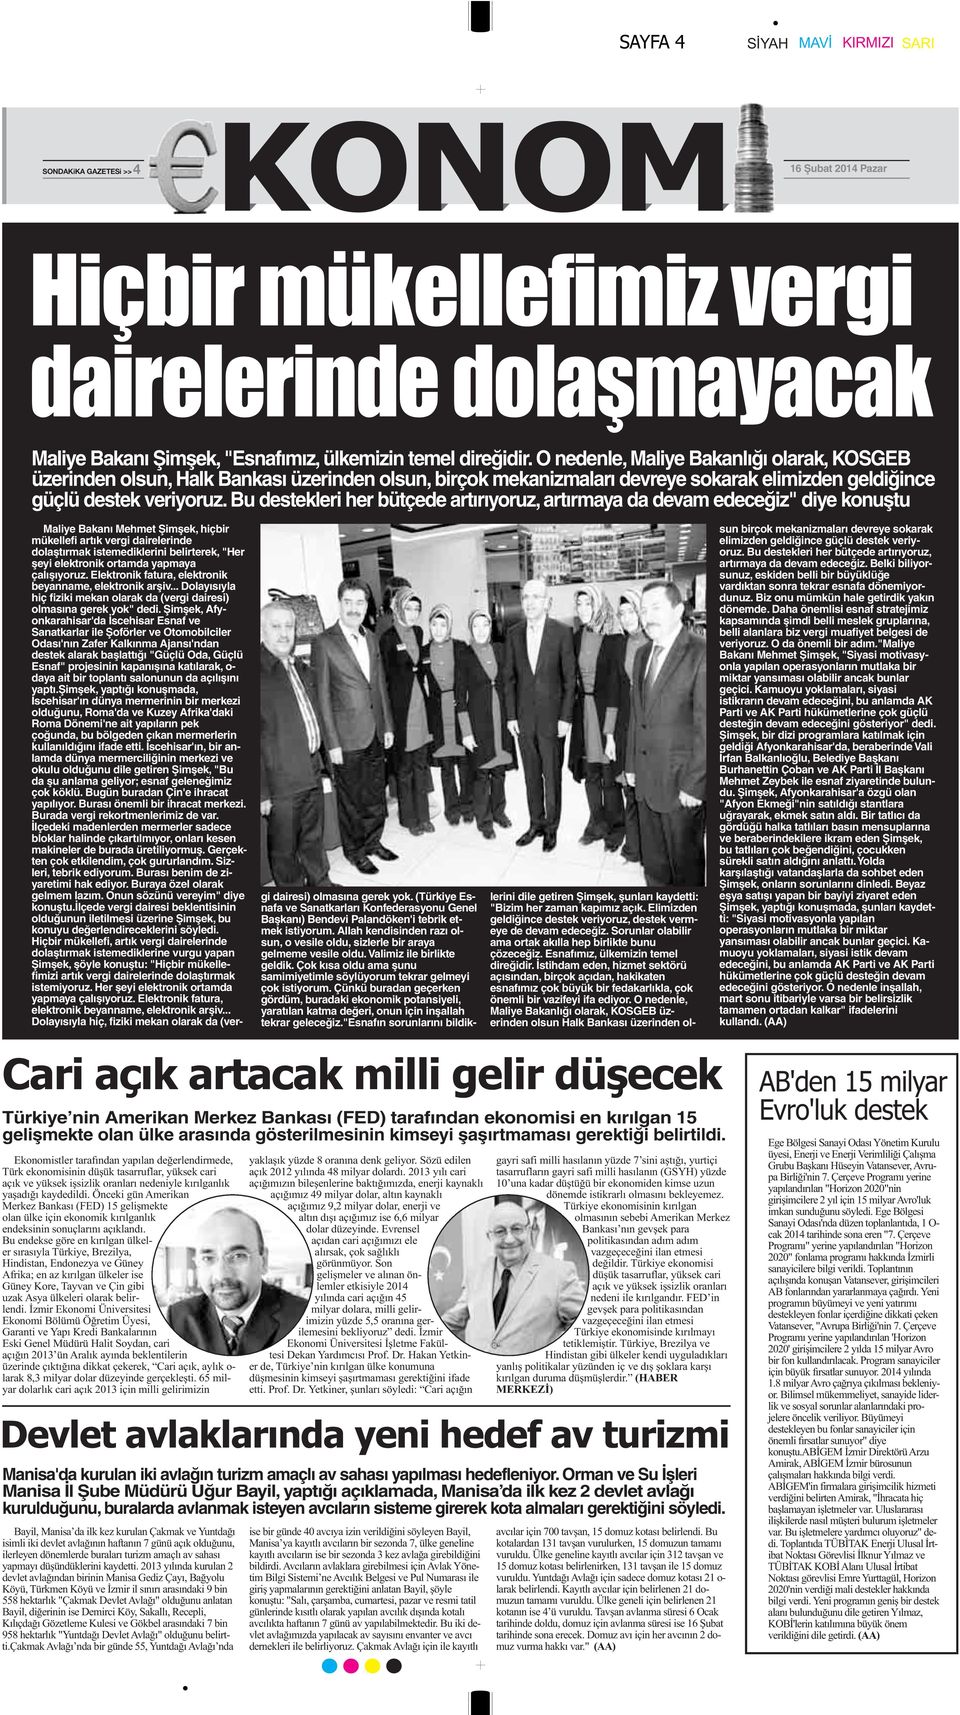 Bu destekleri her bütçede artırıyoruz, artırmaya da devam edeceğiz" diye konuştu Maliye Bakanı Mehmet Şimşek, hiçbir mükellefi artık vergi dairelerinde dolaştırmak istemediklerini belirterek, "Her